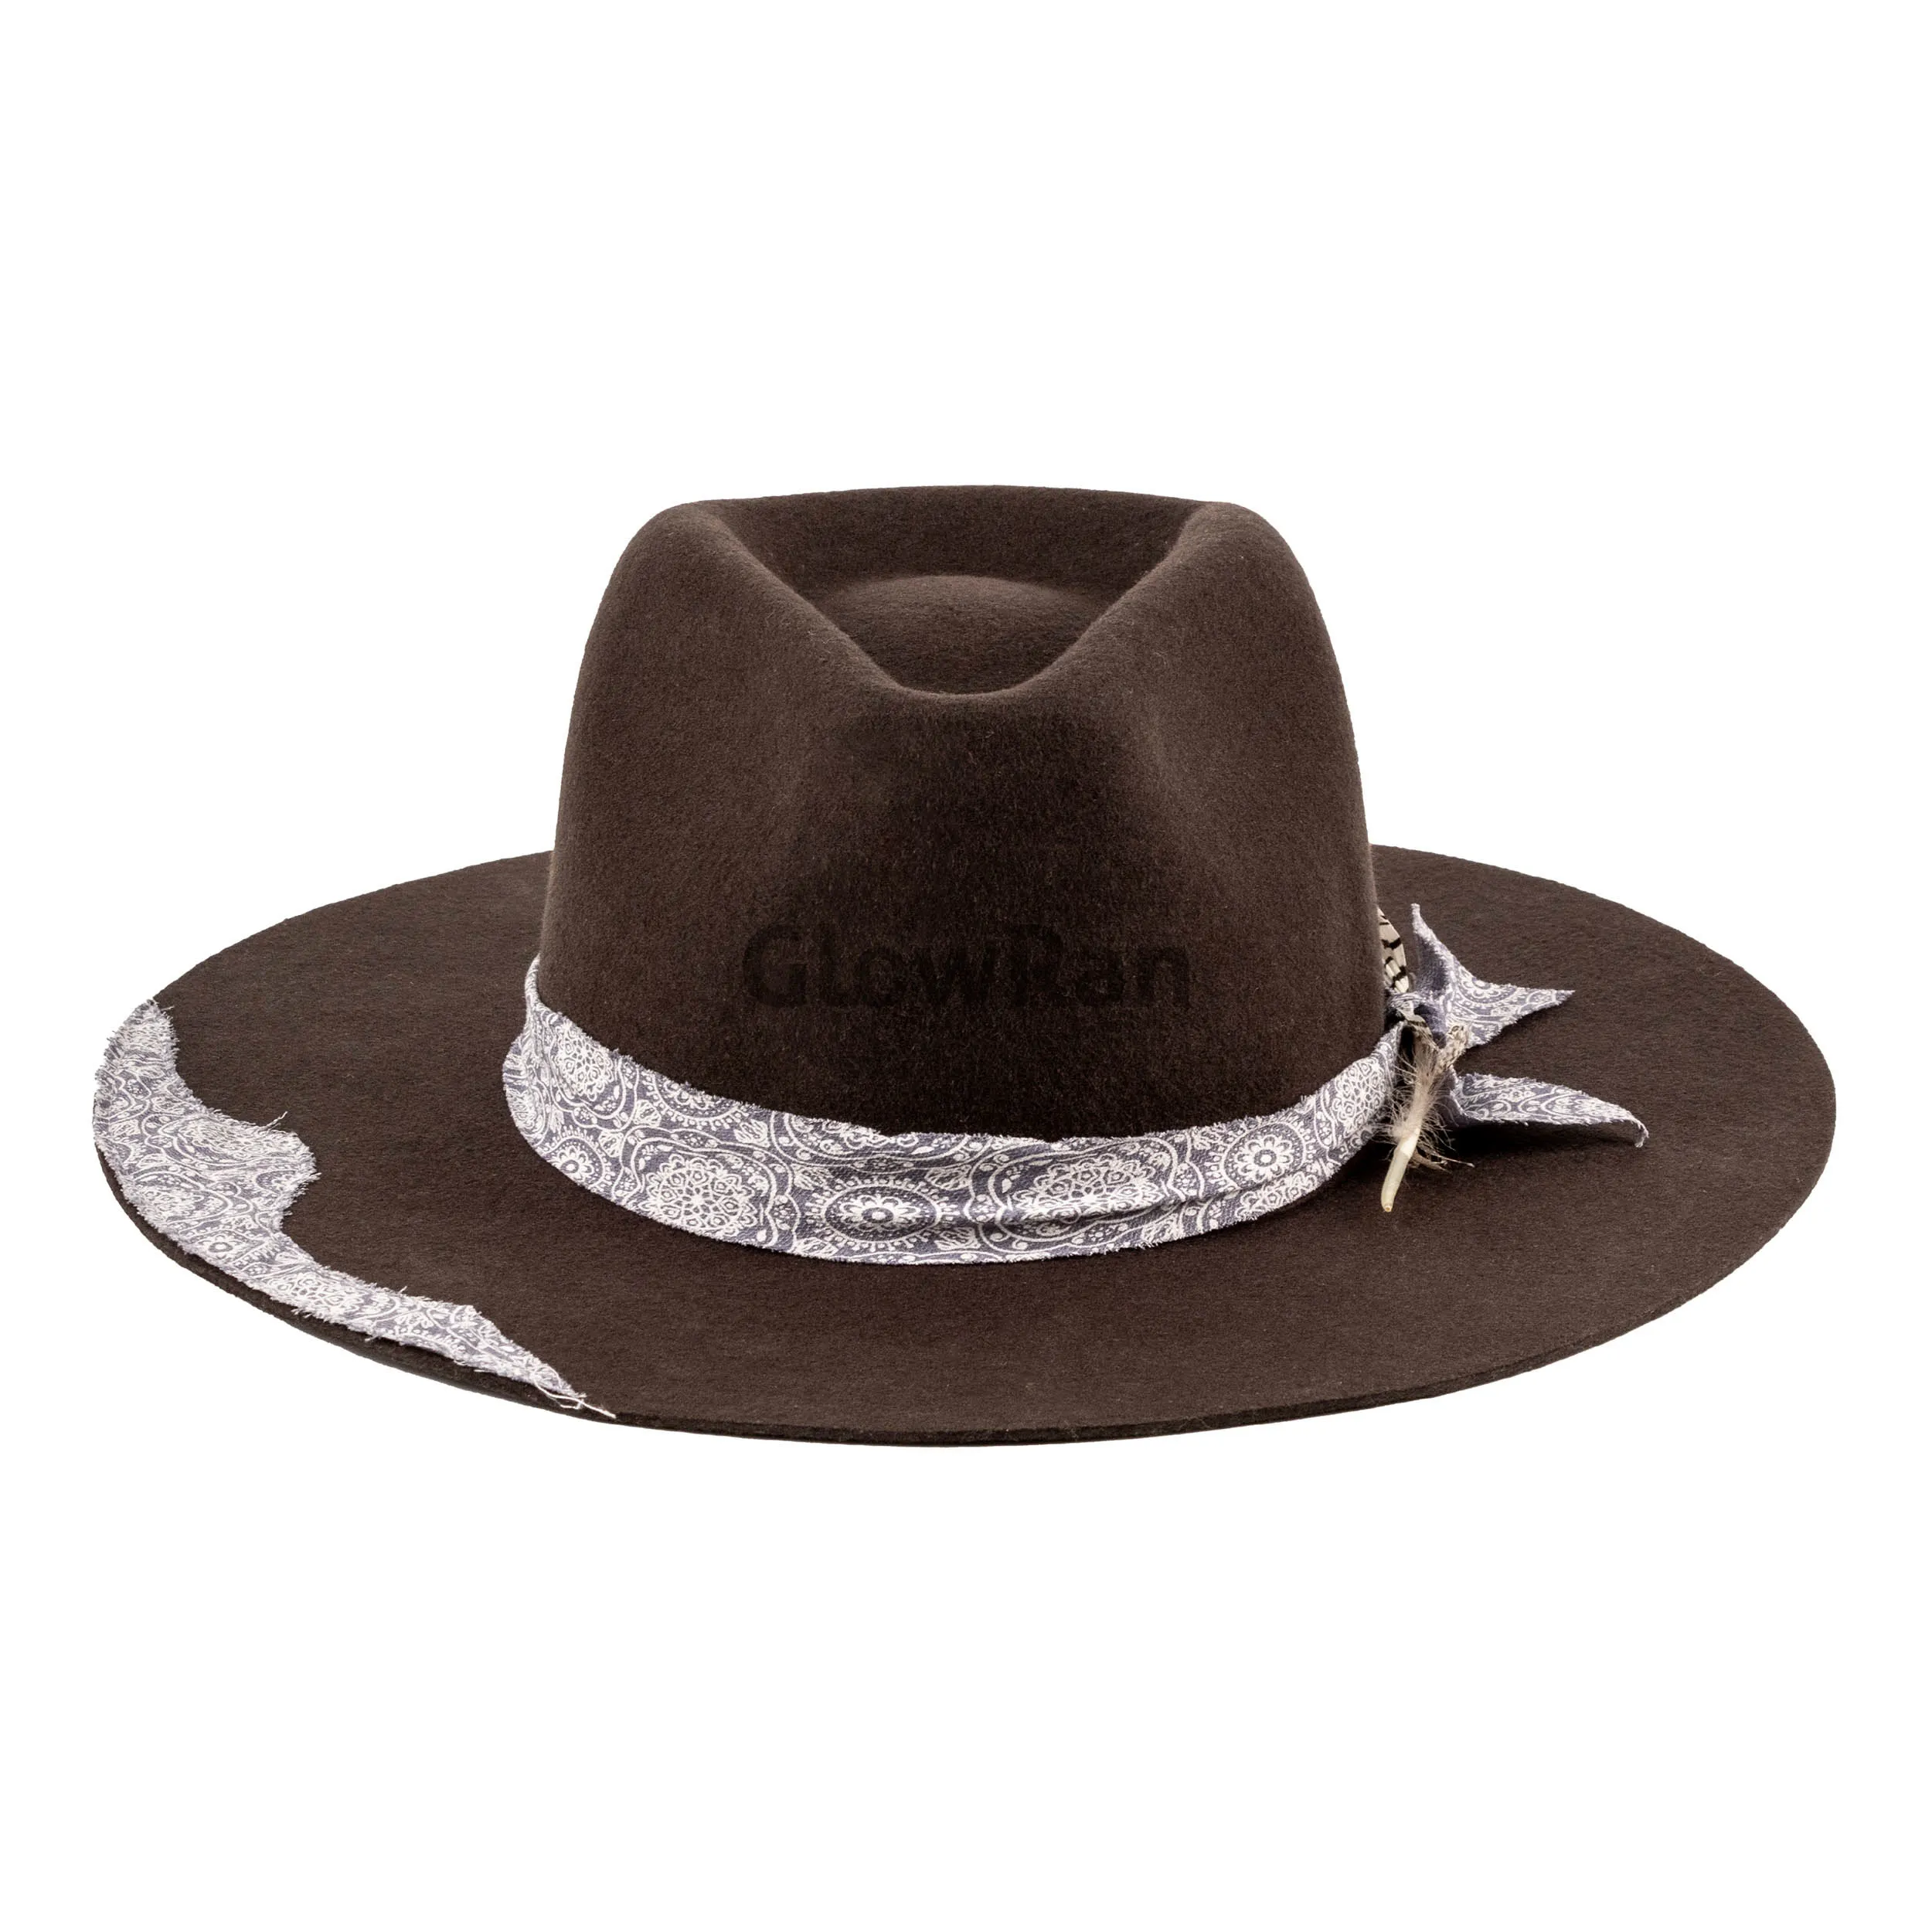 Bant ile GlowRan yüksek kalite lüks geniş fötr şapka avustralya yün şapka